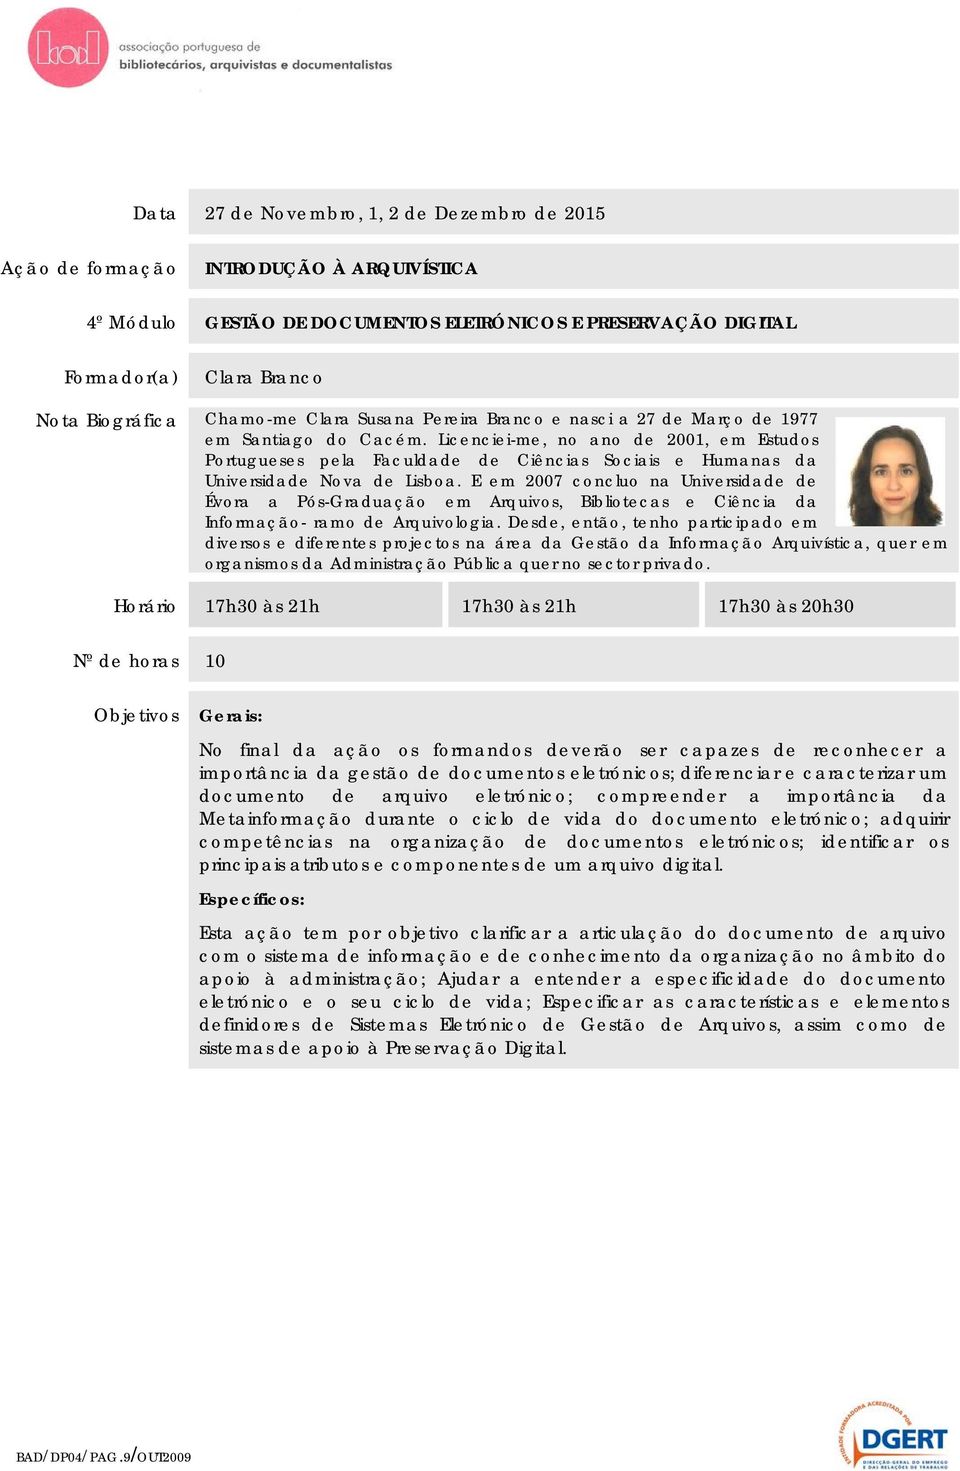 Licenciei-me, no ano de 2001, em Estudos Portugueses pela Faculdade de Ciências Sociais e Humanas da Universidade Nova de Lisboa.